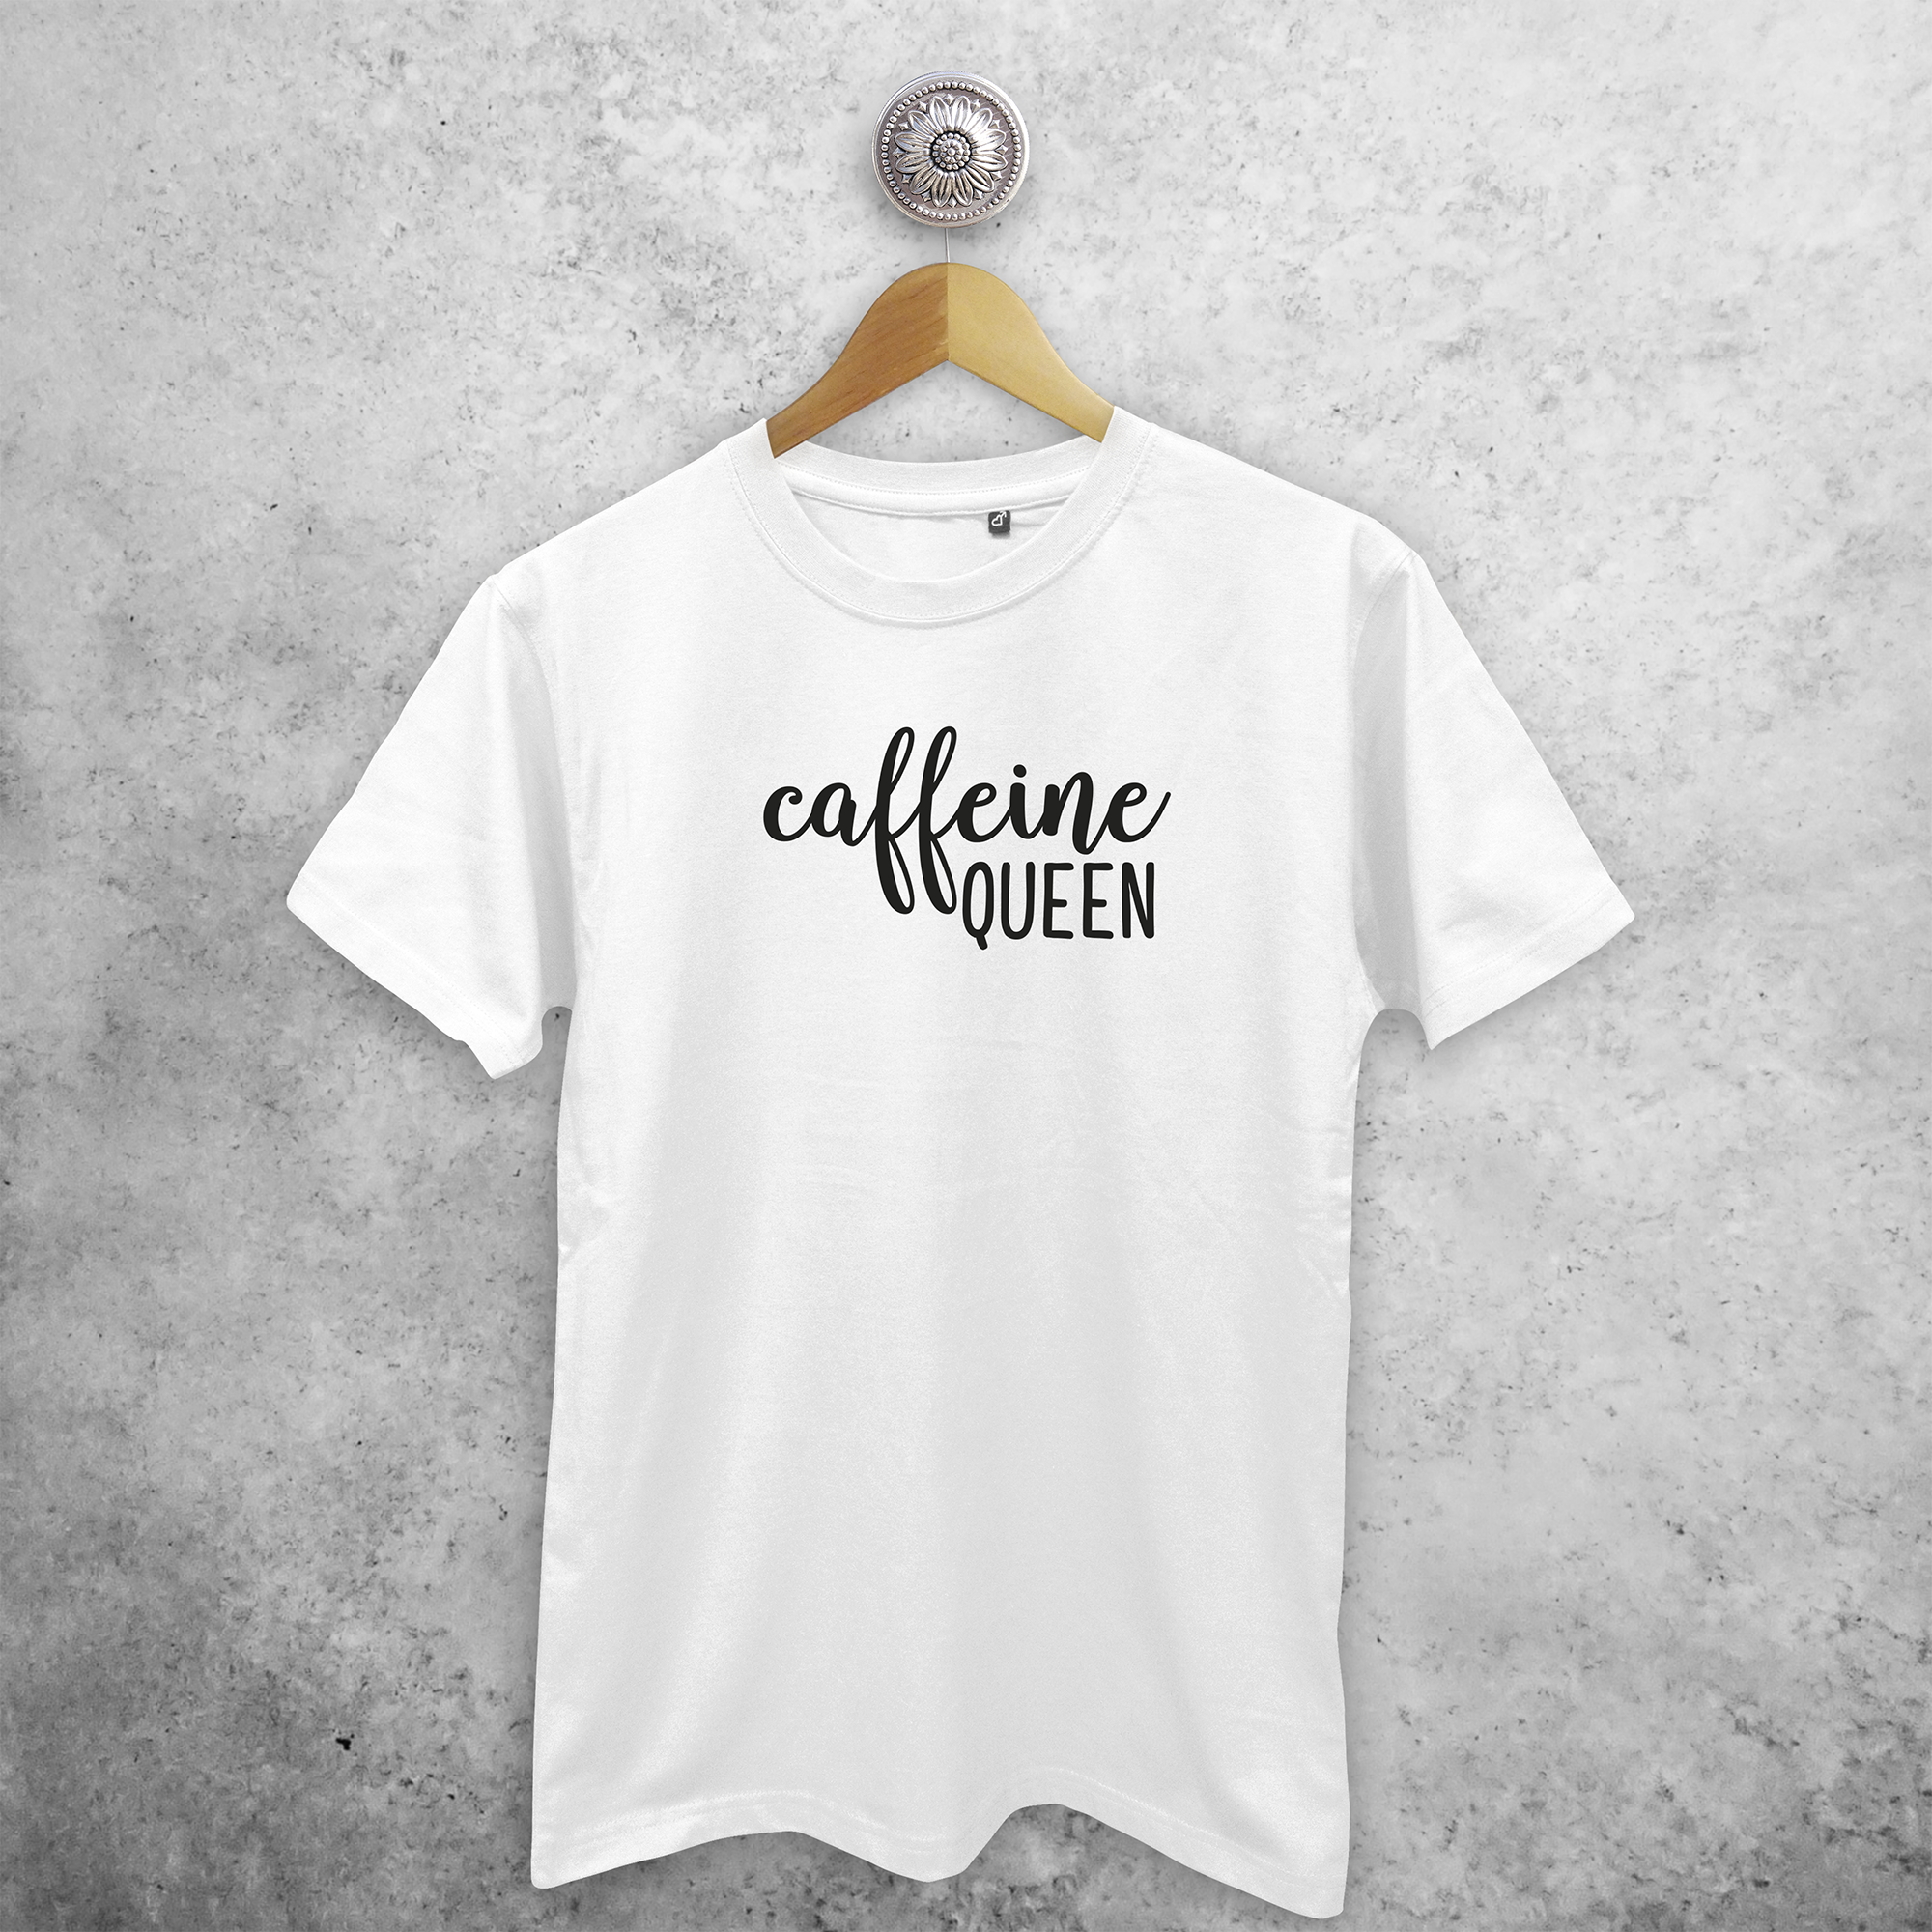 'Caffeine queen' volwassene shirt